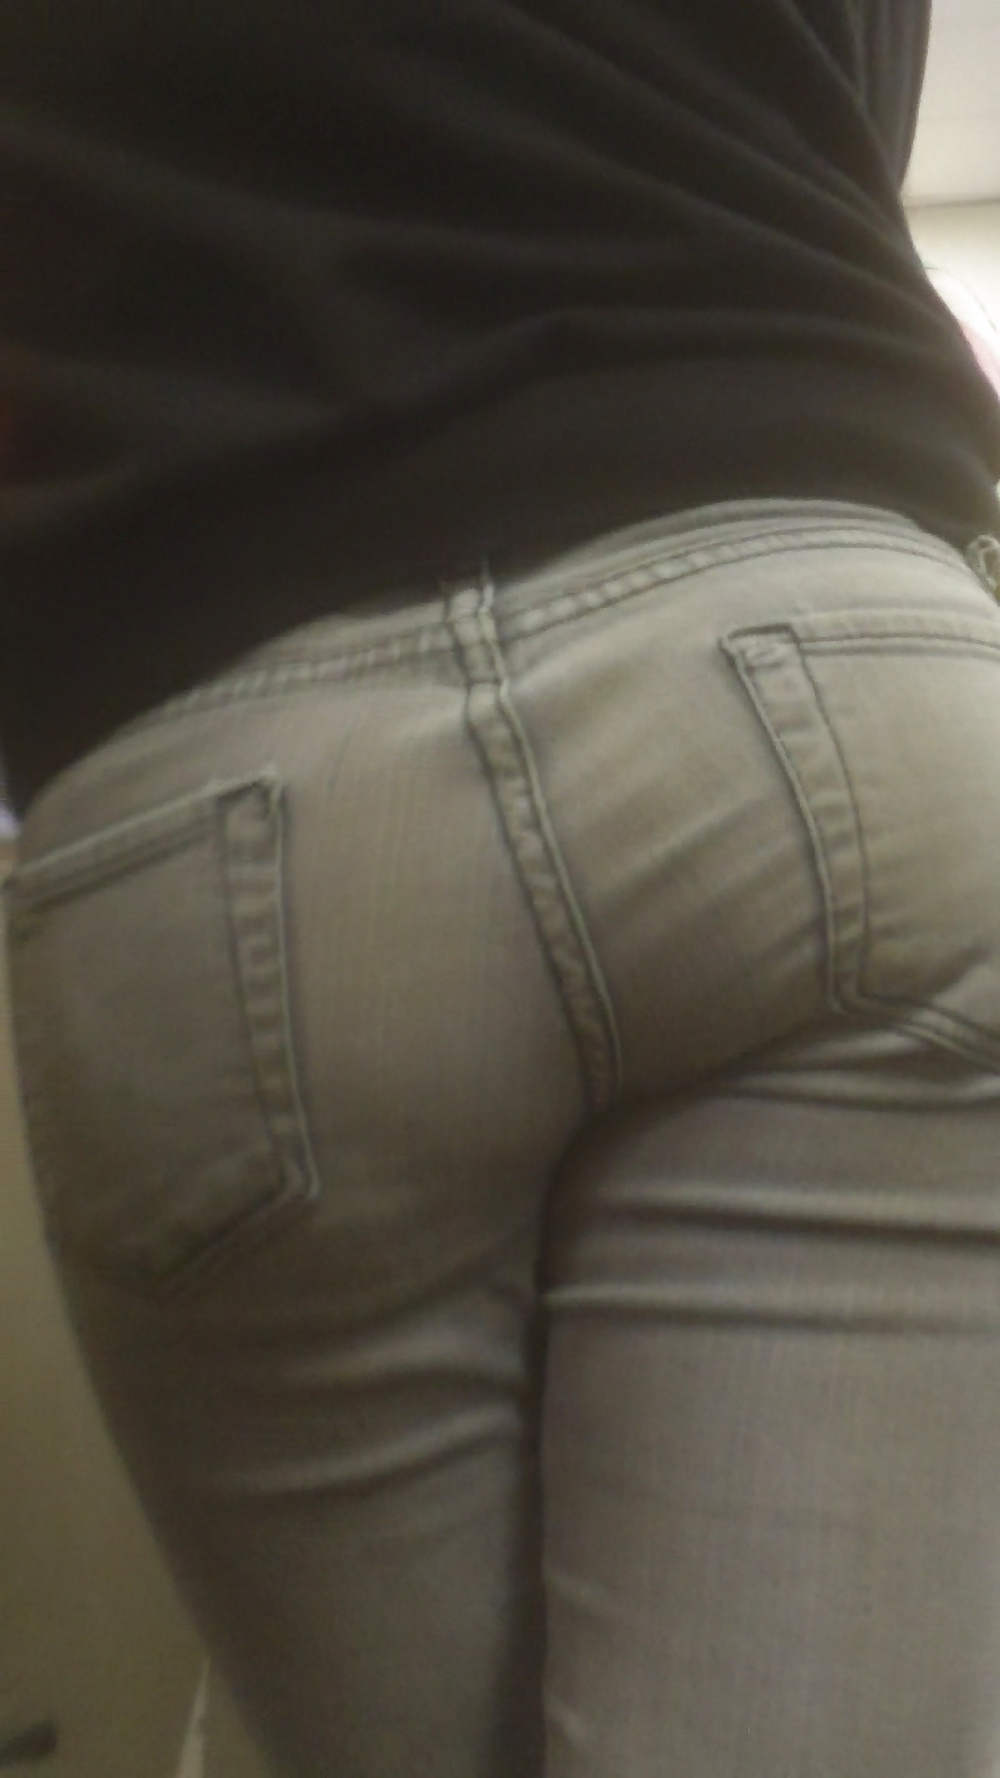 Popular teen girls ass & butt in jeans part 3 #25399987